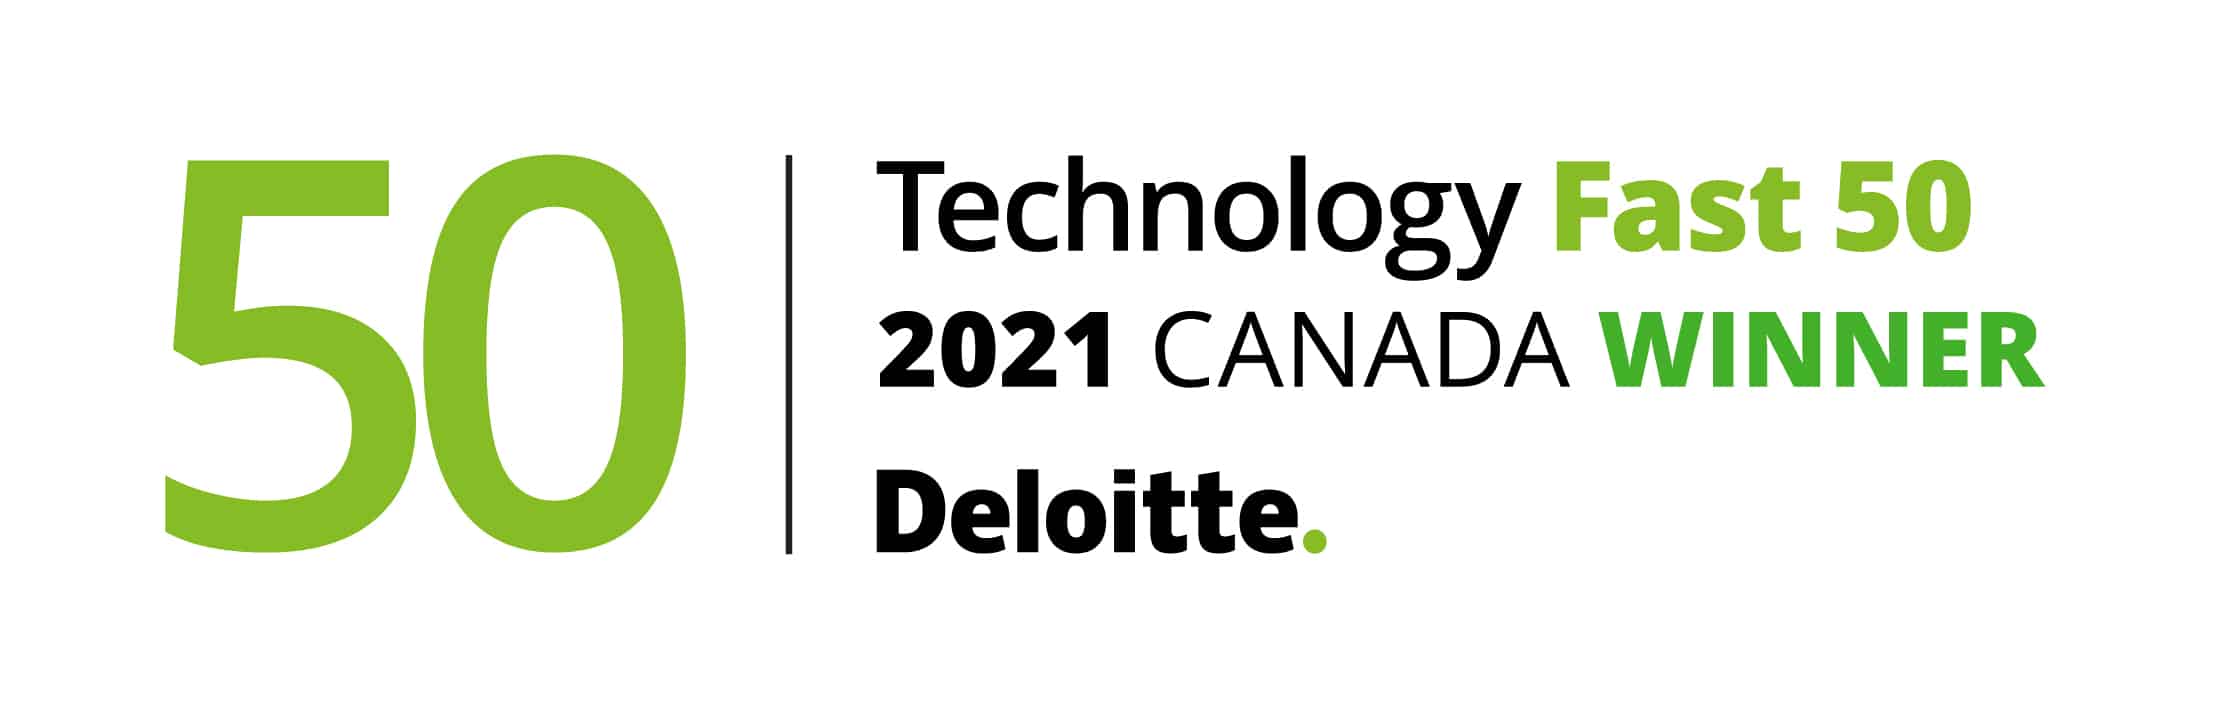 Technology Fast 50 2021 Canada Winner Deloitte.